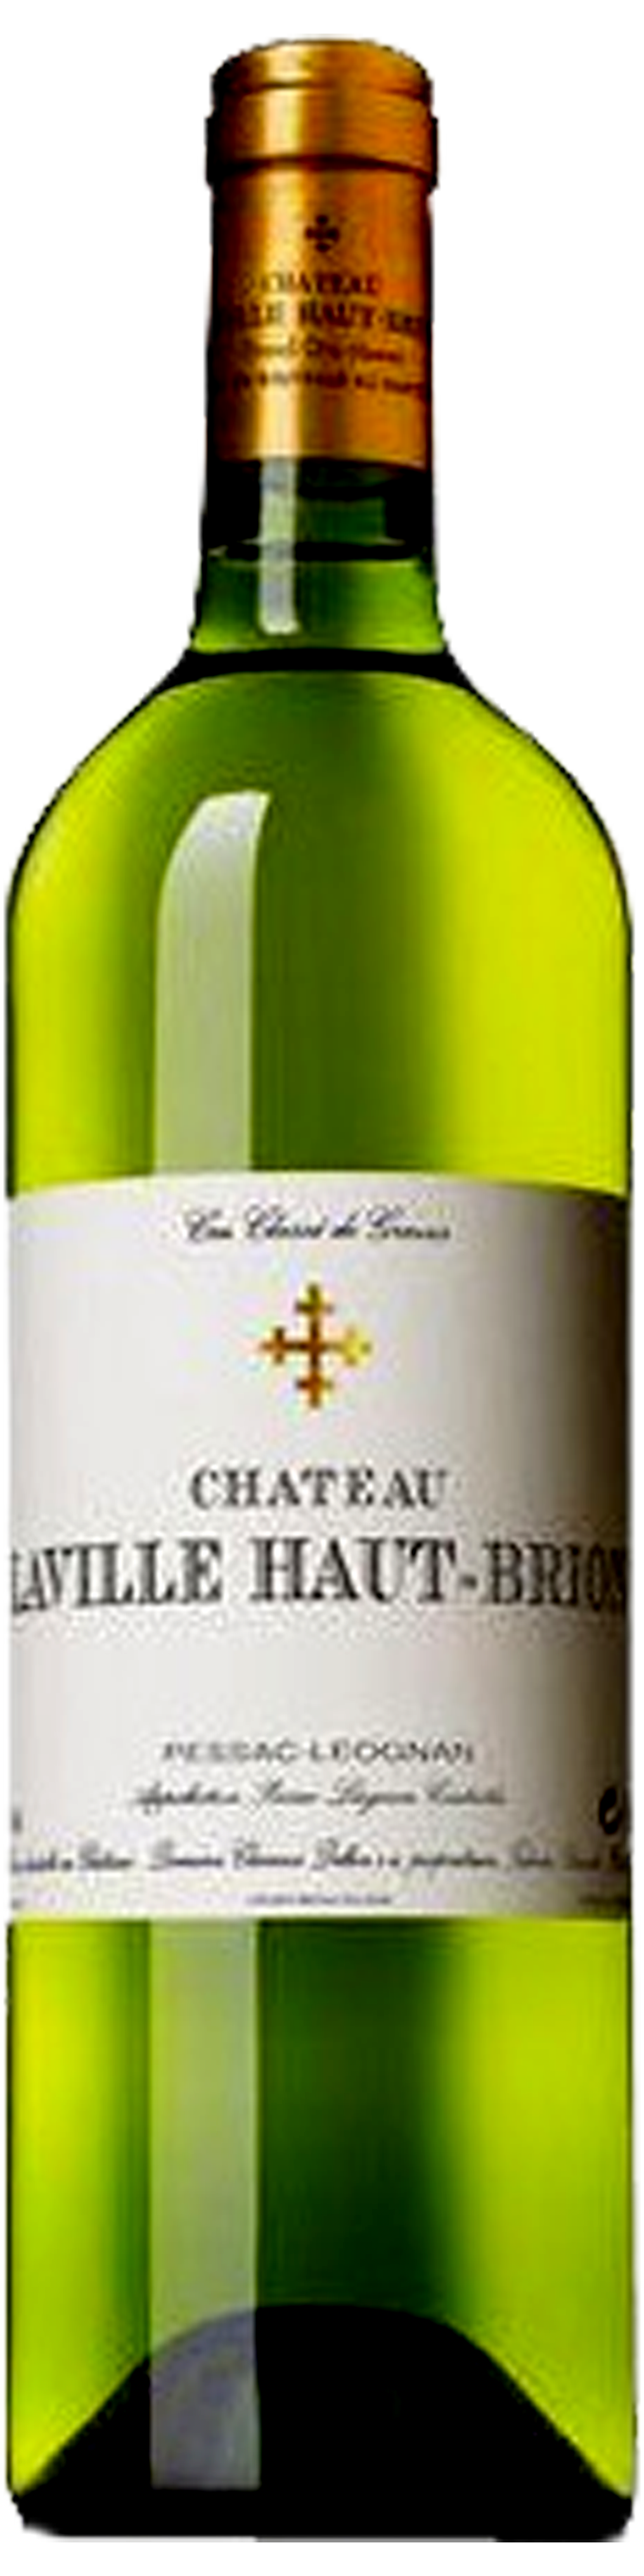 Bottle shot of 2007 Château Laville Haut Brion Blanc, Cr Classé Graves